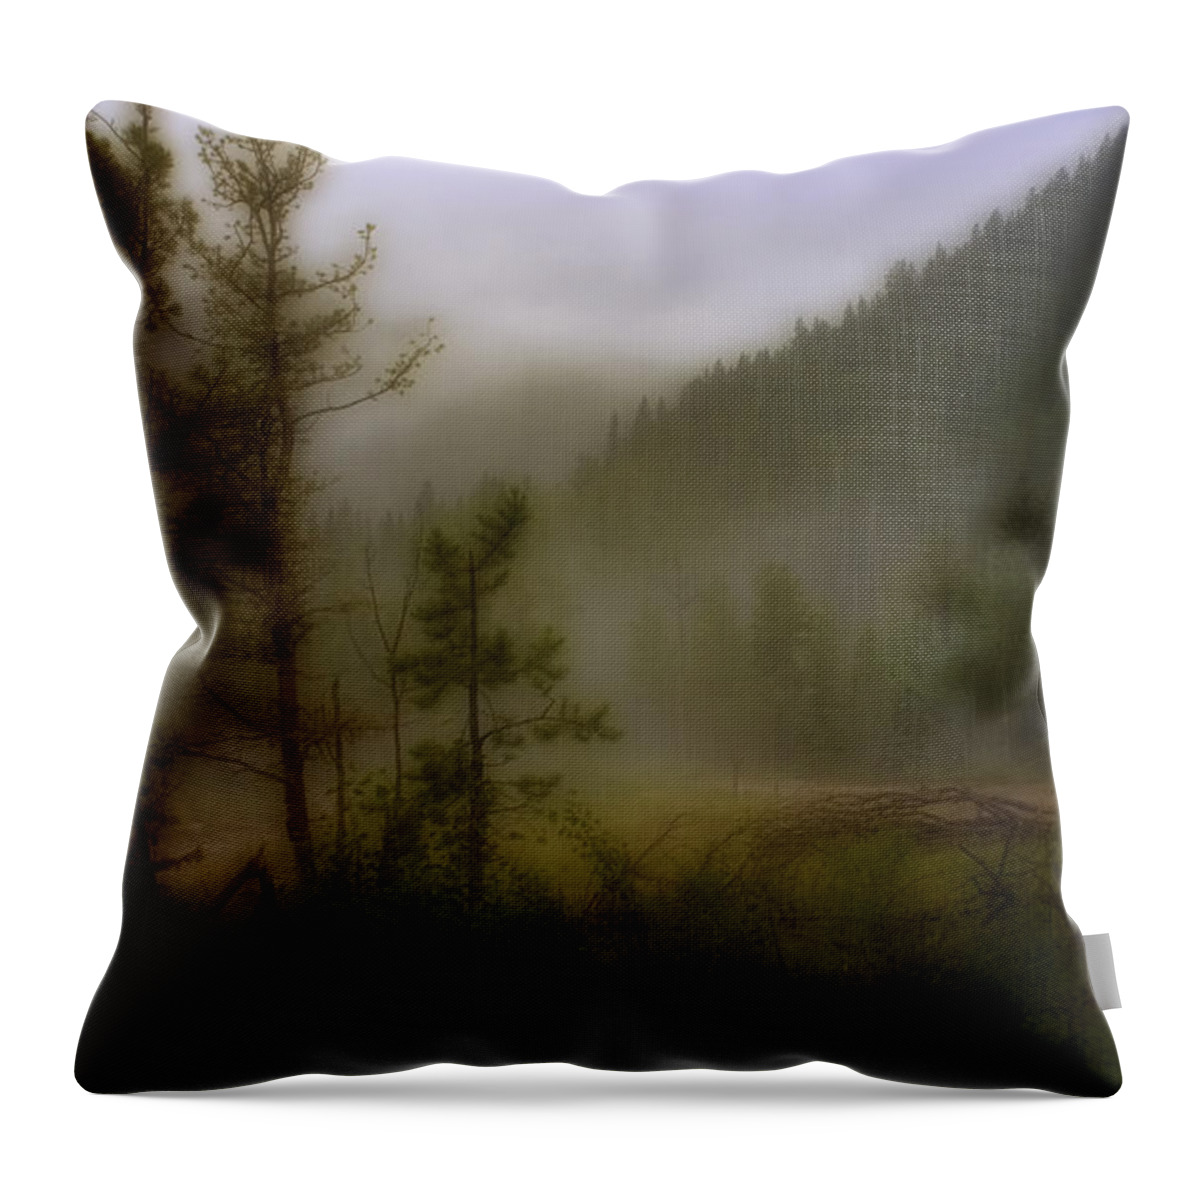 Colorado Throw Pillow featuring the photograph Misty Mountain by Ellen Heaverlo